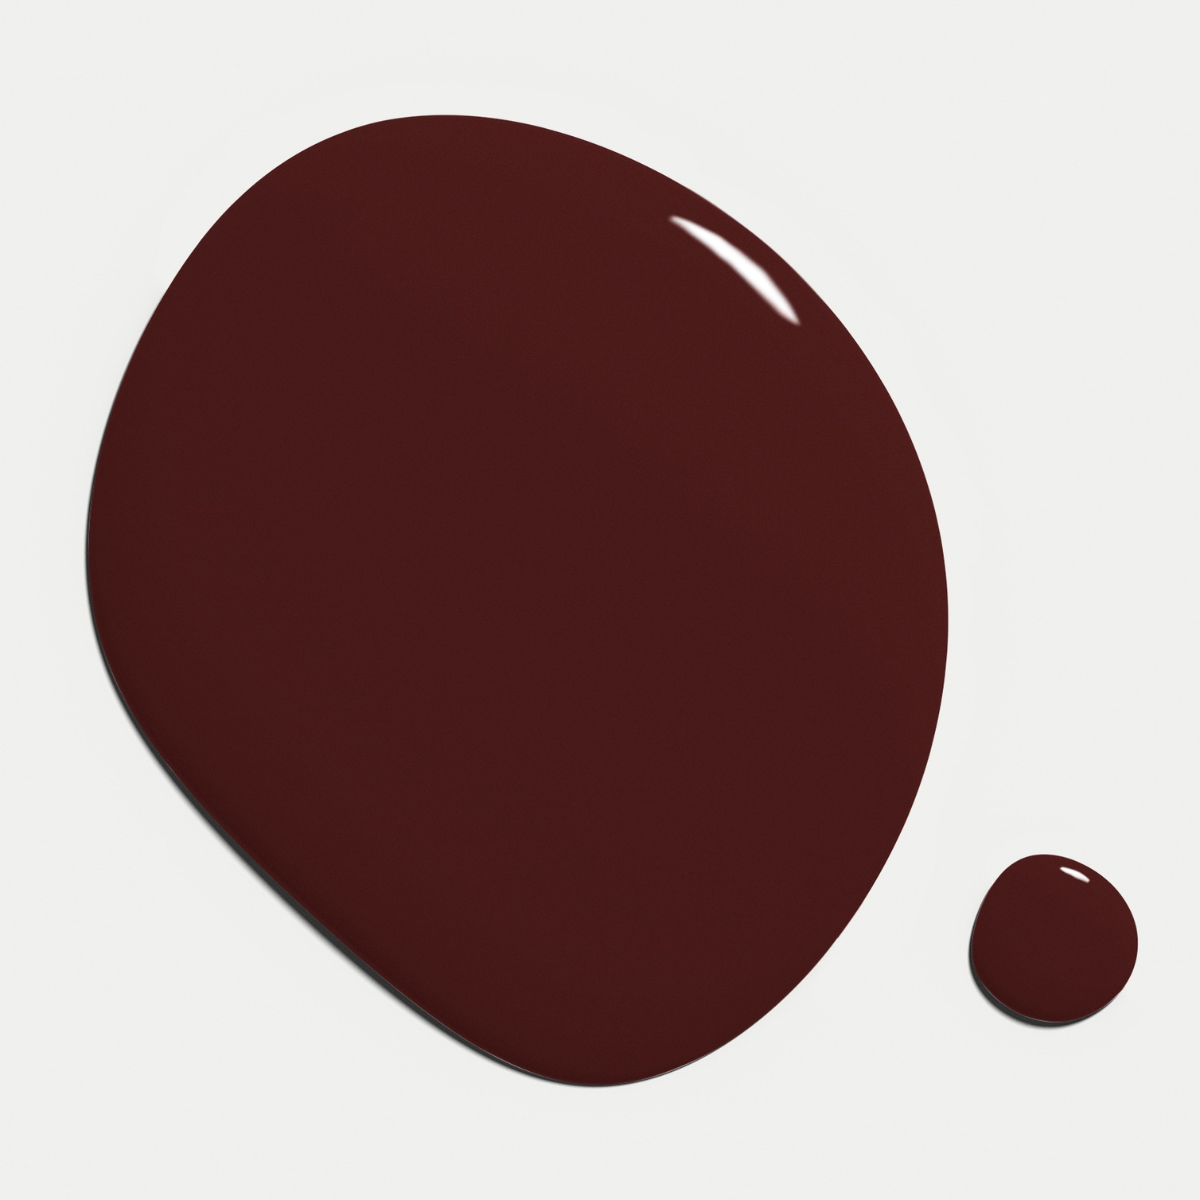 Nilens Jord - Nail Polish – Dark Burgundy